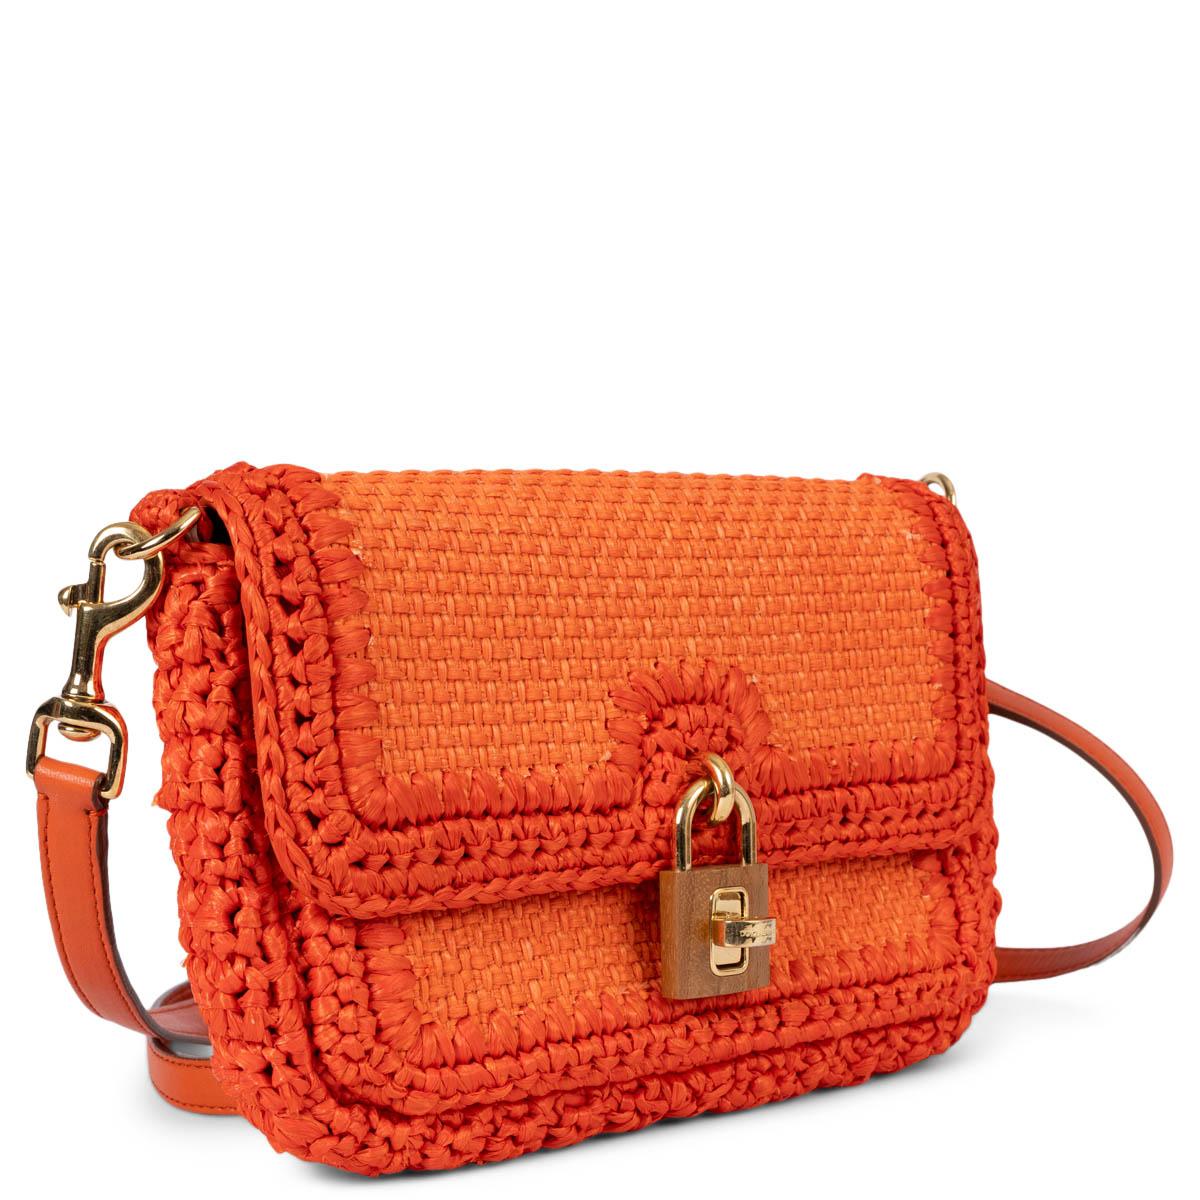 100% authentique Dolce & Gabbana Miss Bonita sac à bandoulière en raphia orange. Il est doté d'un cadenas en métal doré et en bois, doublé d'une toile classique à imprimé léopard et d'une pochette à fermeture éclair au dos. Livré avec une